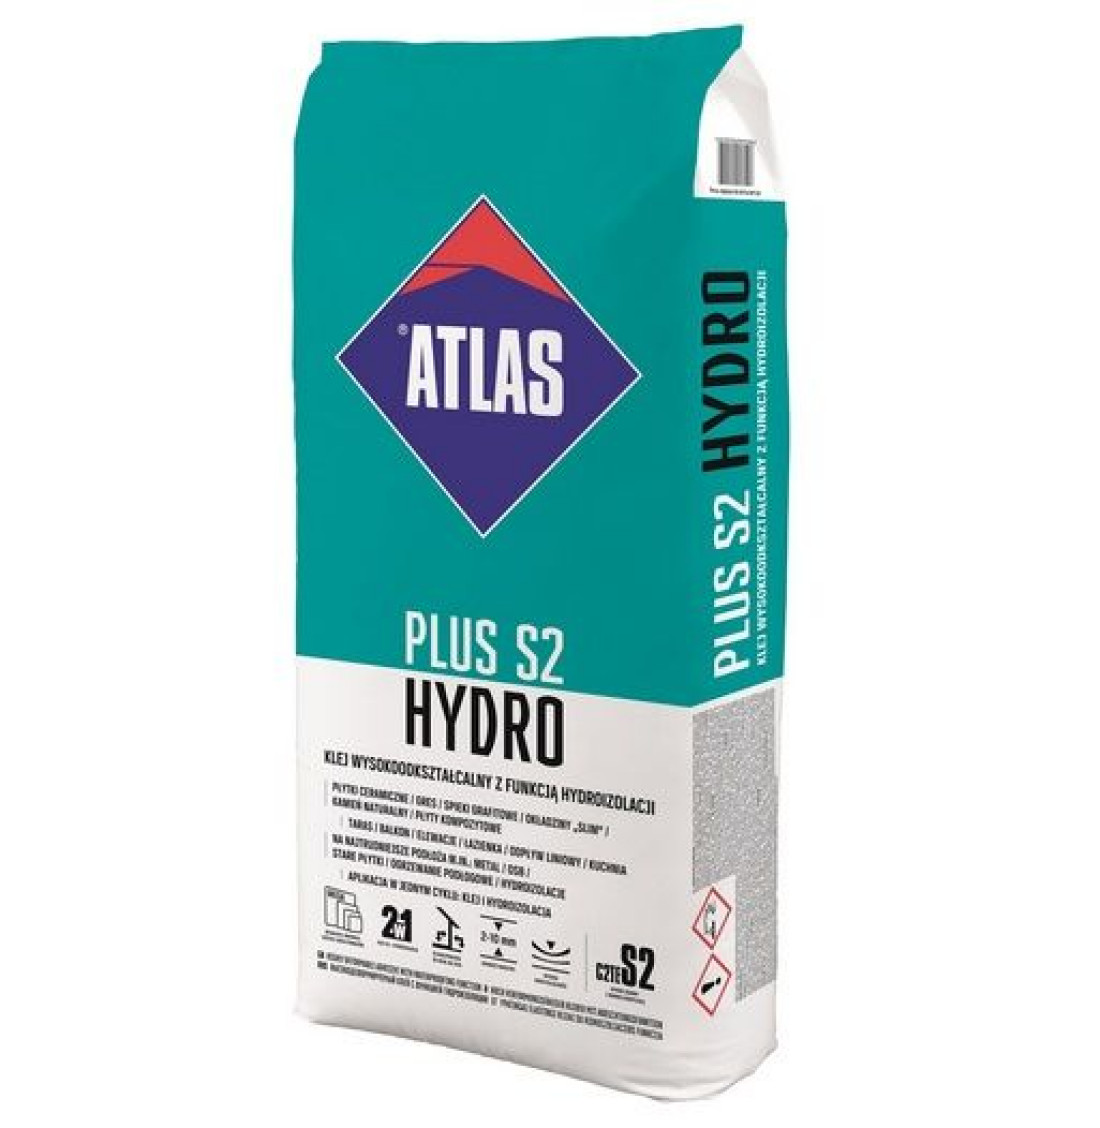 ATLAS PLUS S2 HYDRO - klej wysokoodkształcalny C2TE S2 z funkcją hydroizolacji